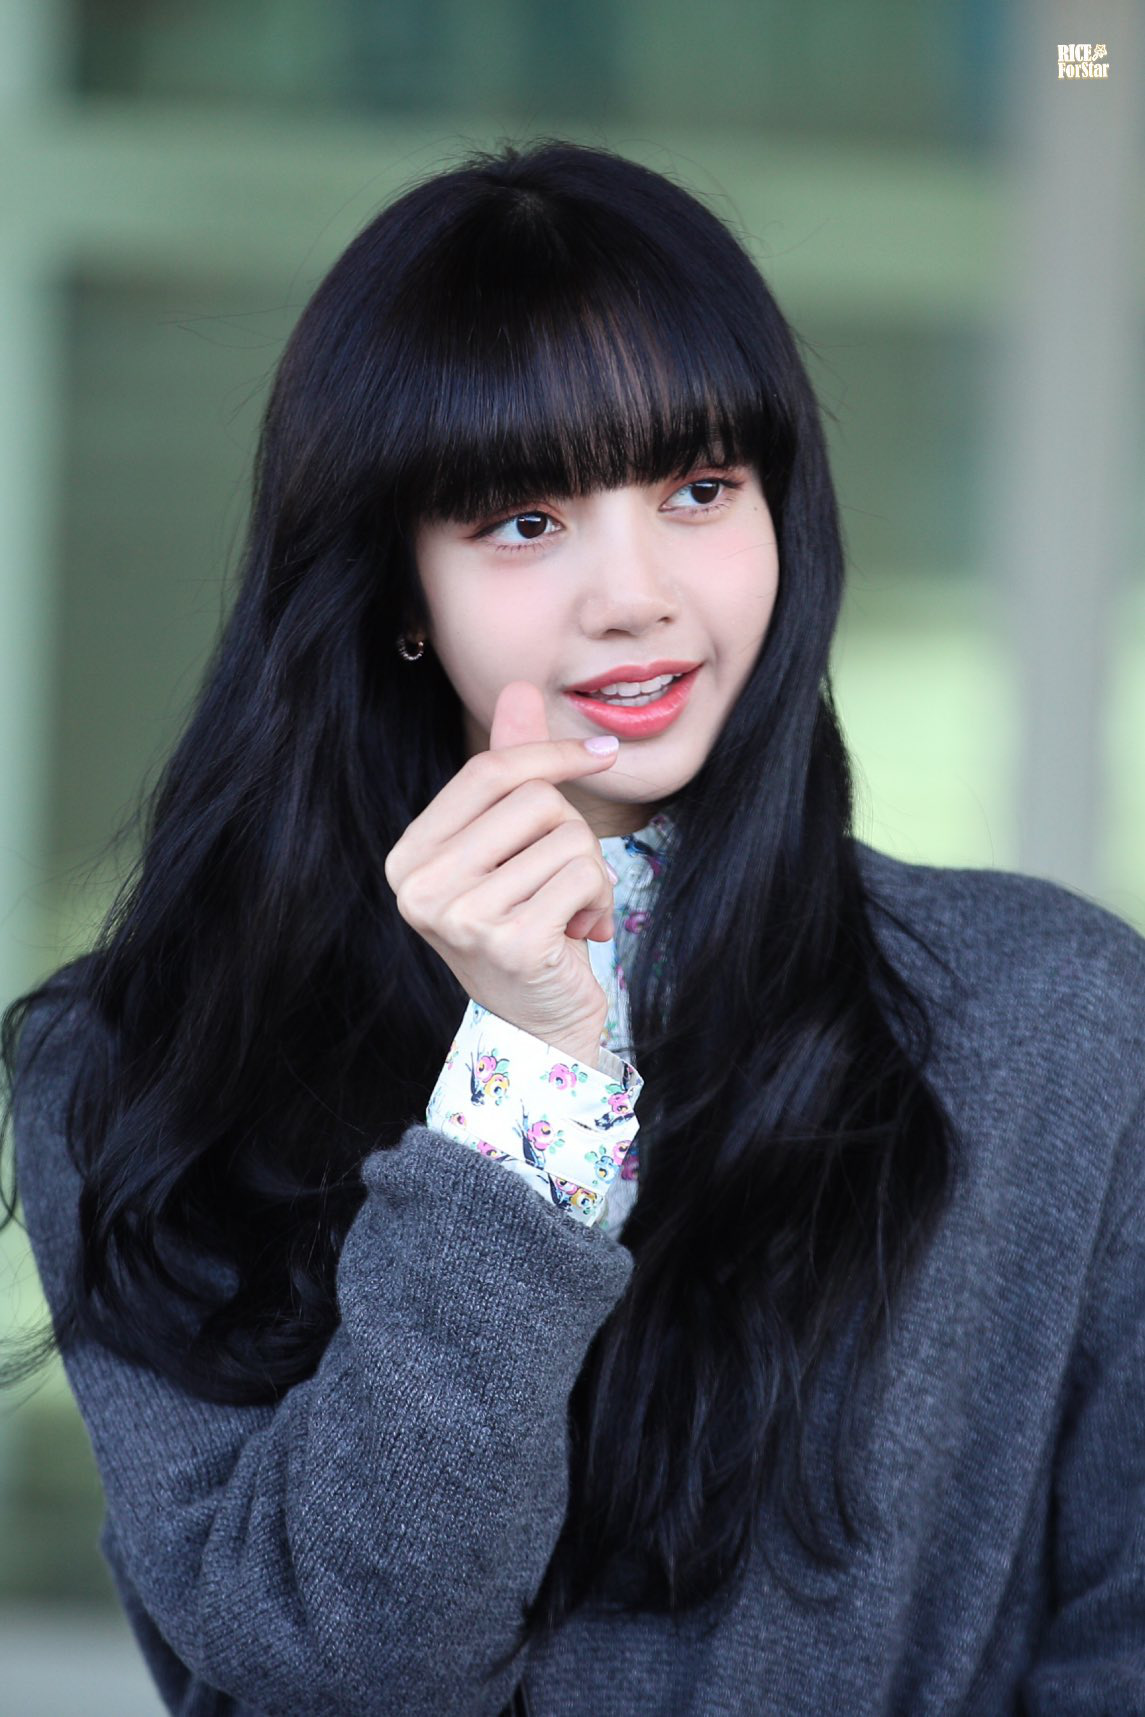 Lisa là một trong những thần tượng nổi tiếng của K-pop với mái tóc đầy quyến rũ và sức hút riêng. Hãy học tập và trau chuốt mái tóc của Lisa để nâng cao vẻ đẹp và phong cách của bản thân.